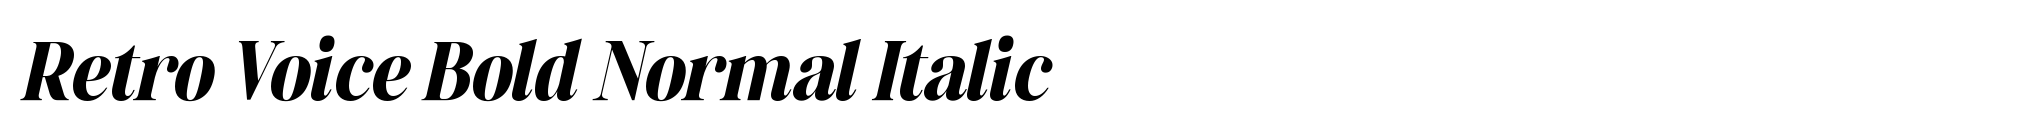 Retro Voice Bold Normal Italic image